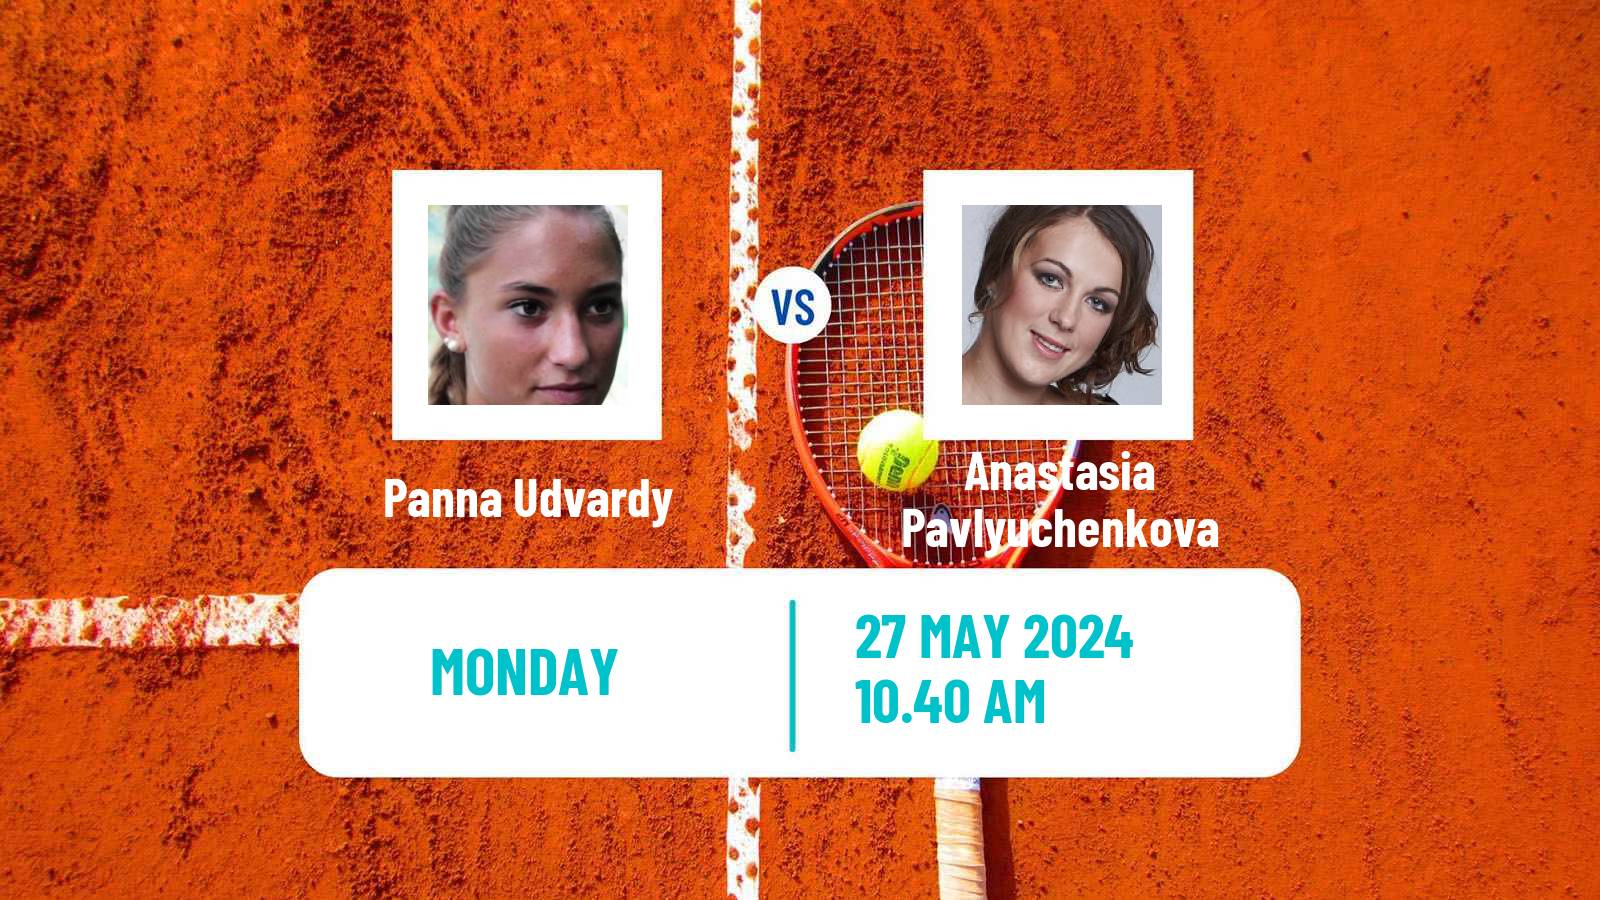 Tennis WTA Roland Garros Panna Udvardy - Anastasia Pavlyuchenkova